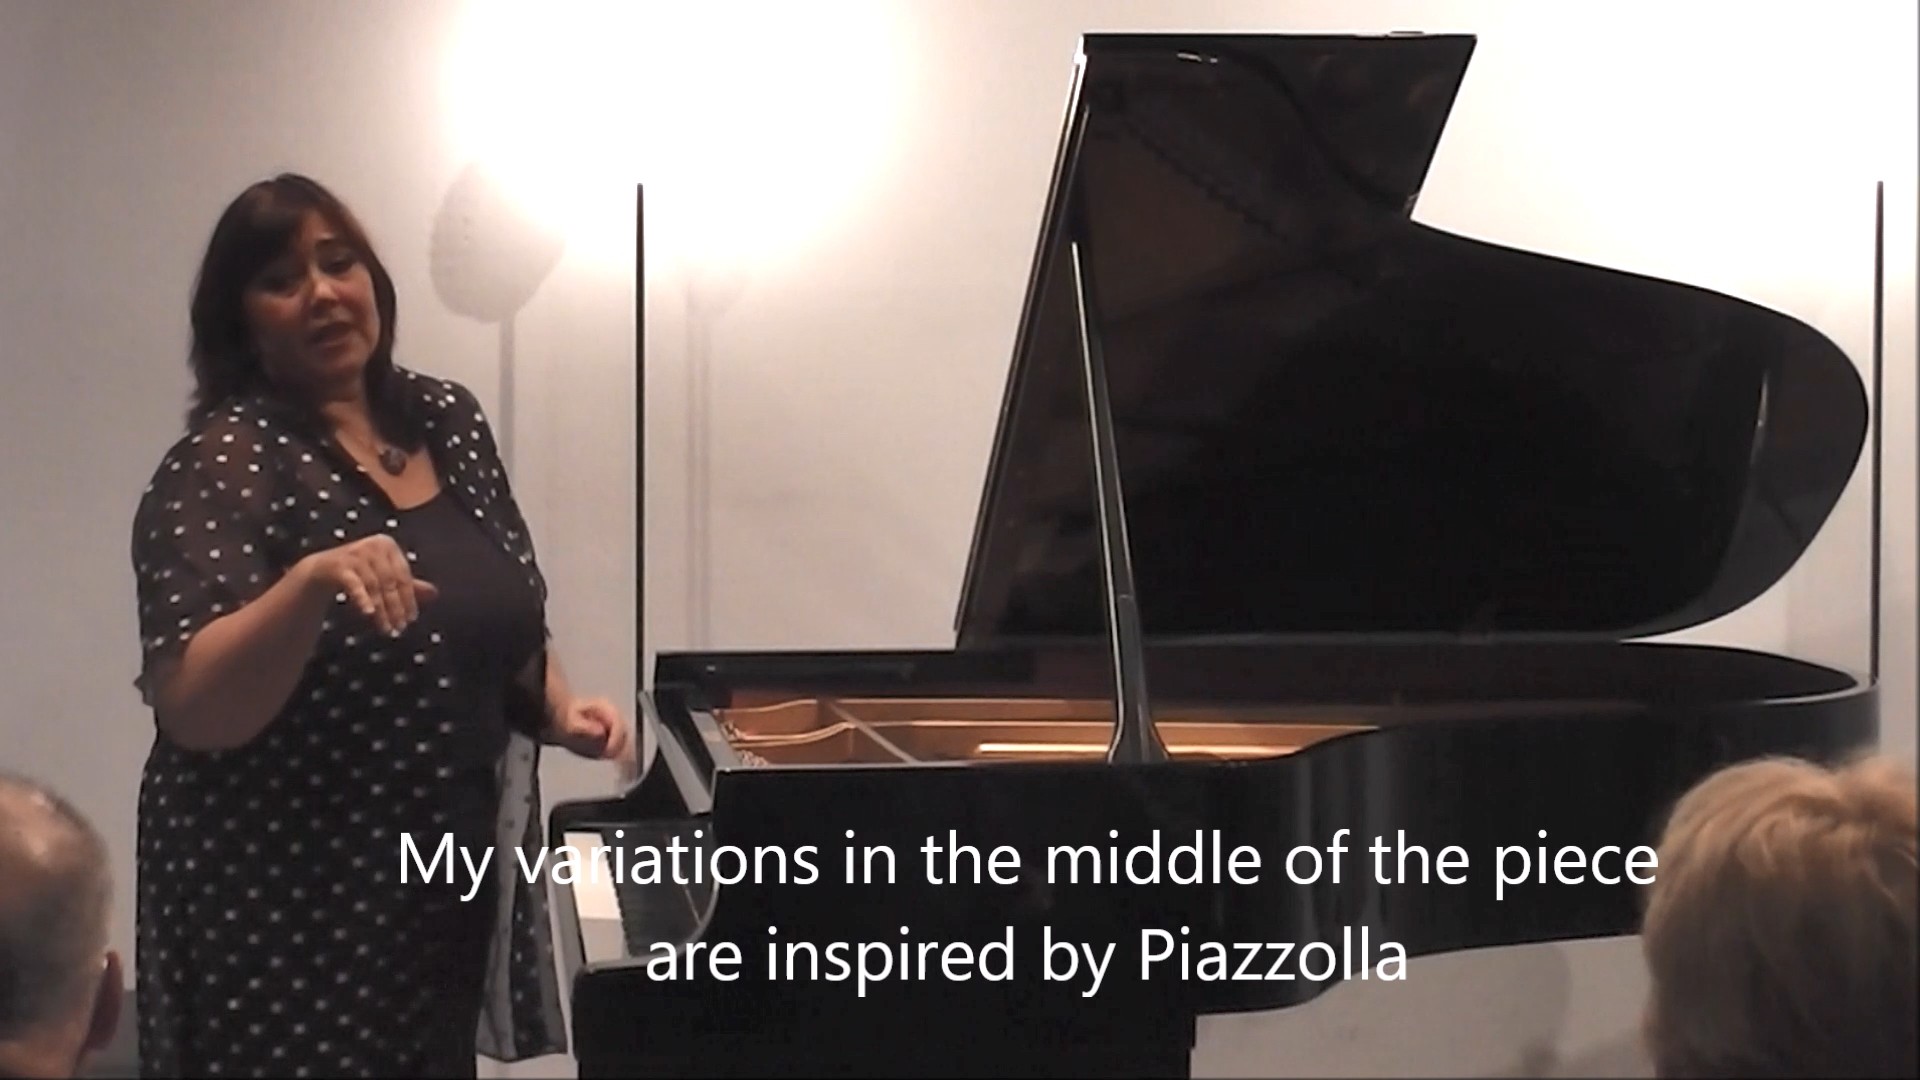 Pillado explaining Piazzolla